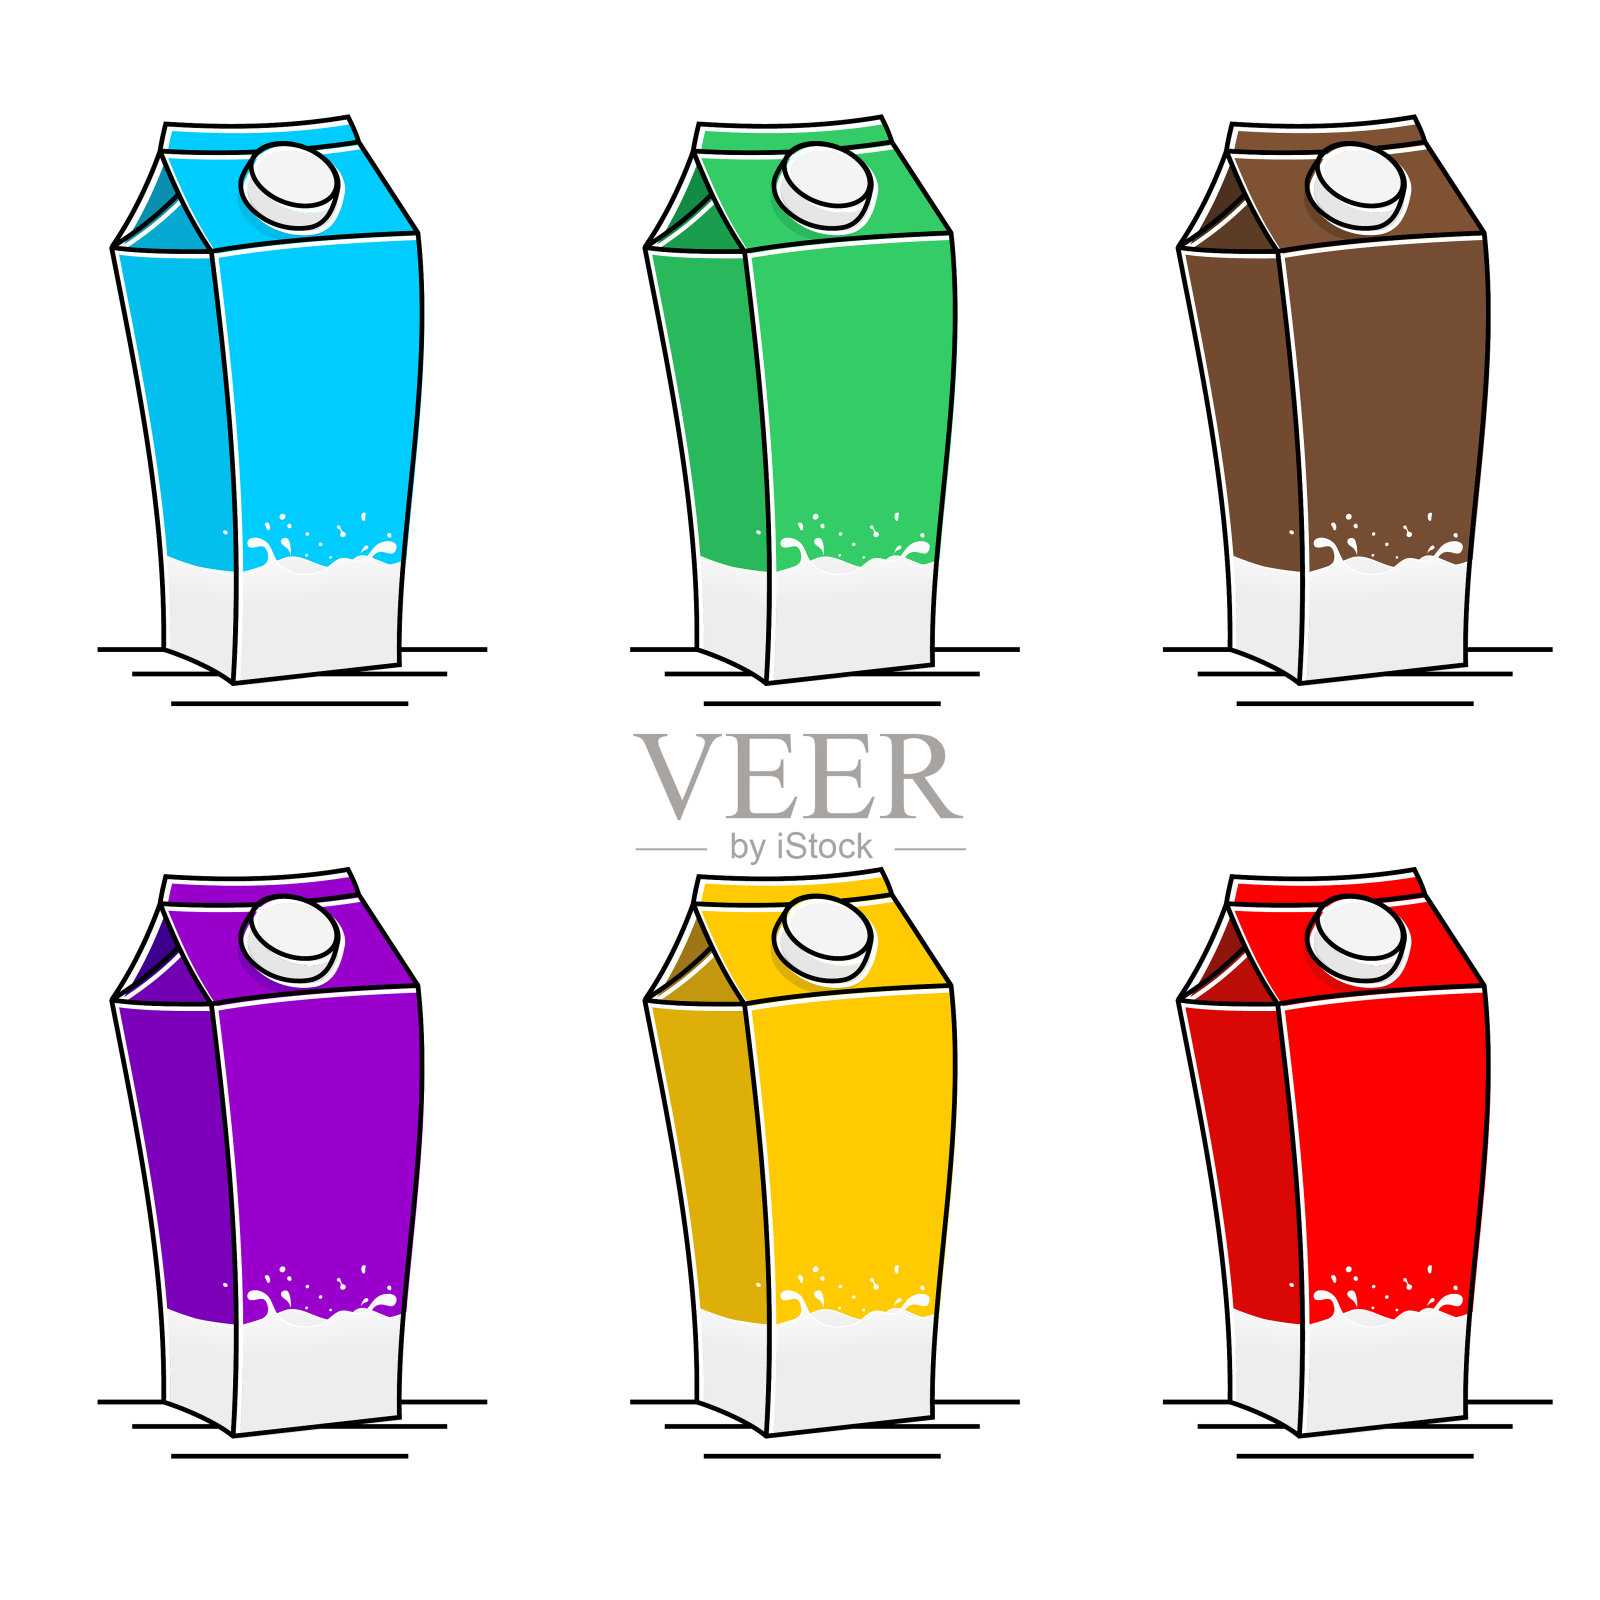 一套牛奶盒包装的变色物体插画图片素材